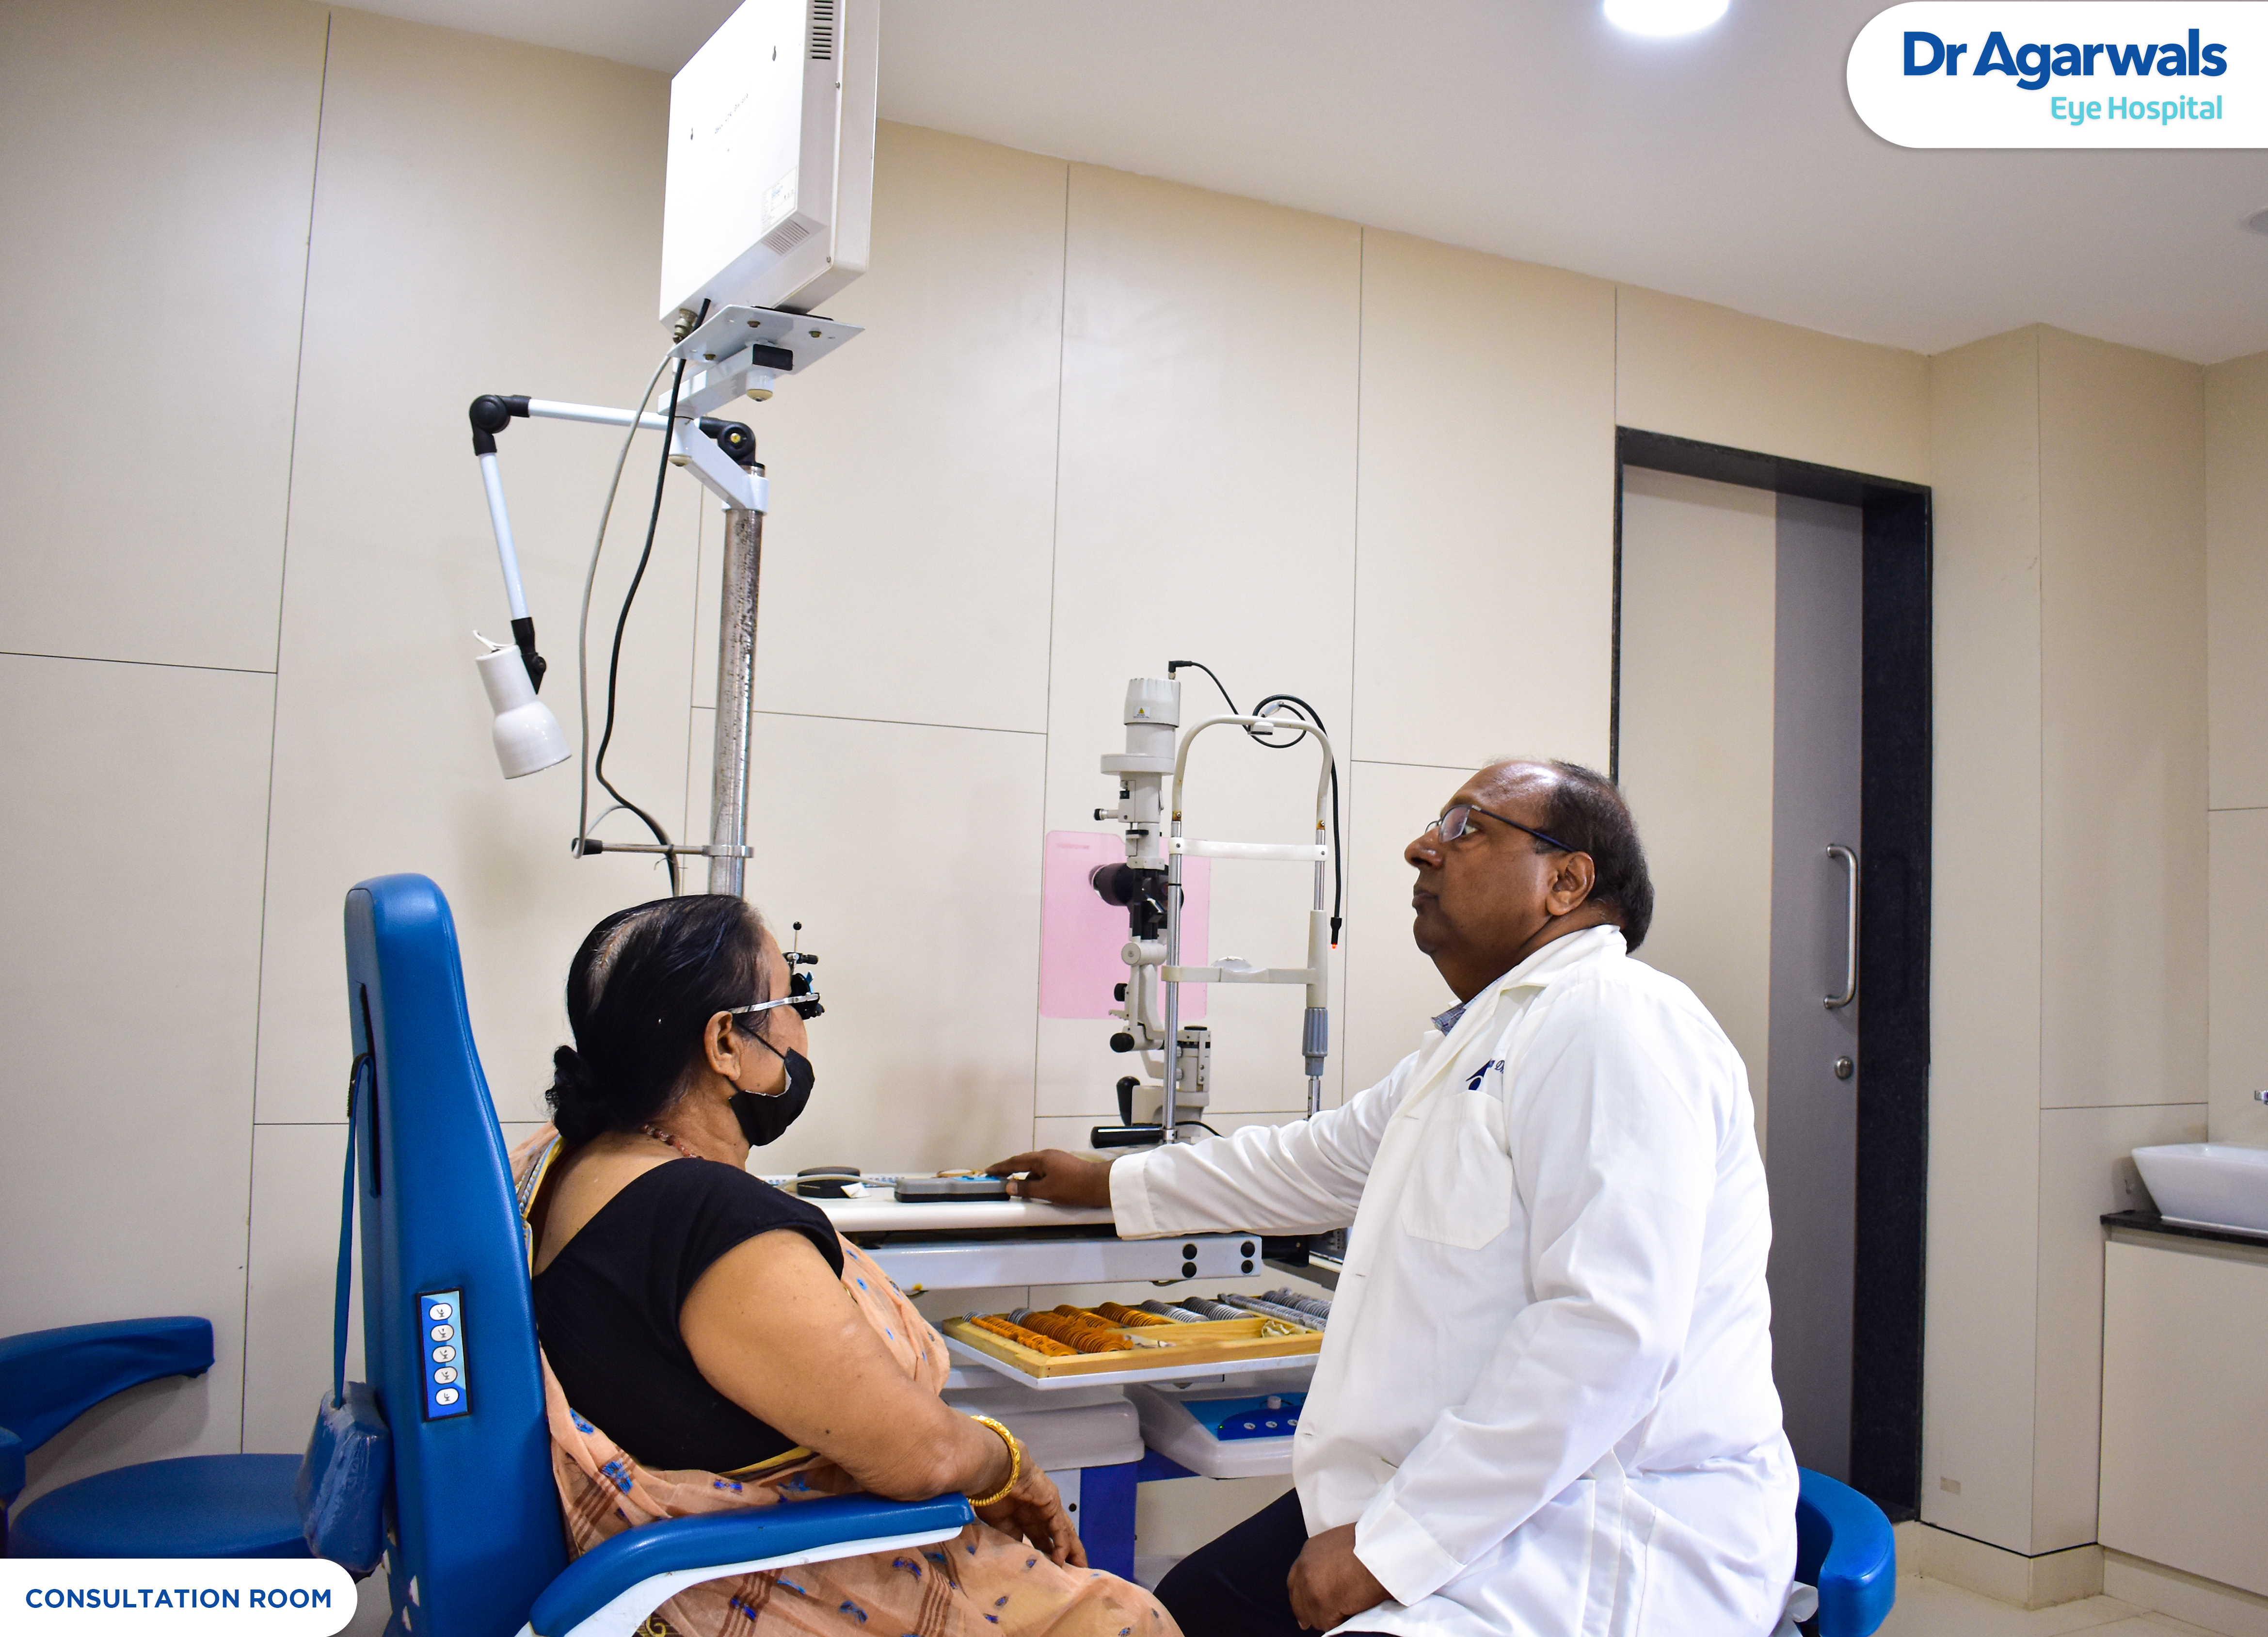 Dr Agarwals Eye Hospital - Madhupatna, Cuttack